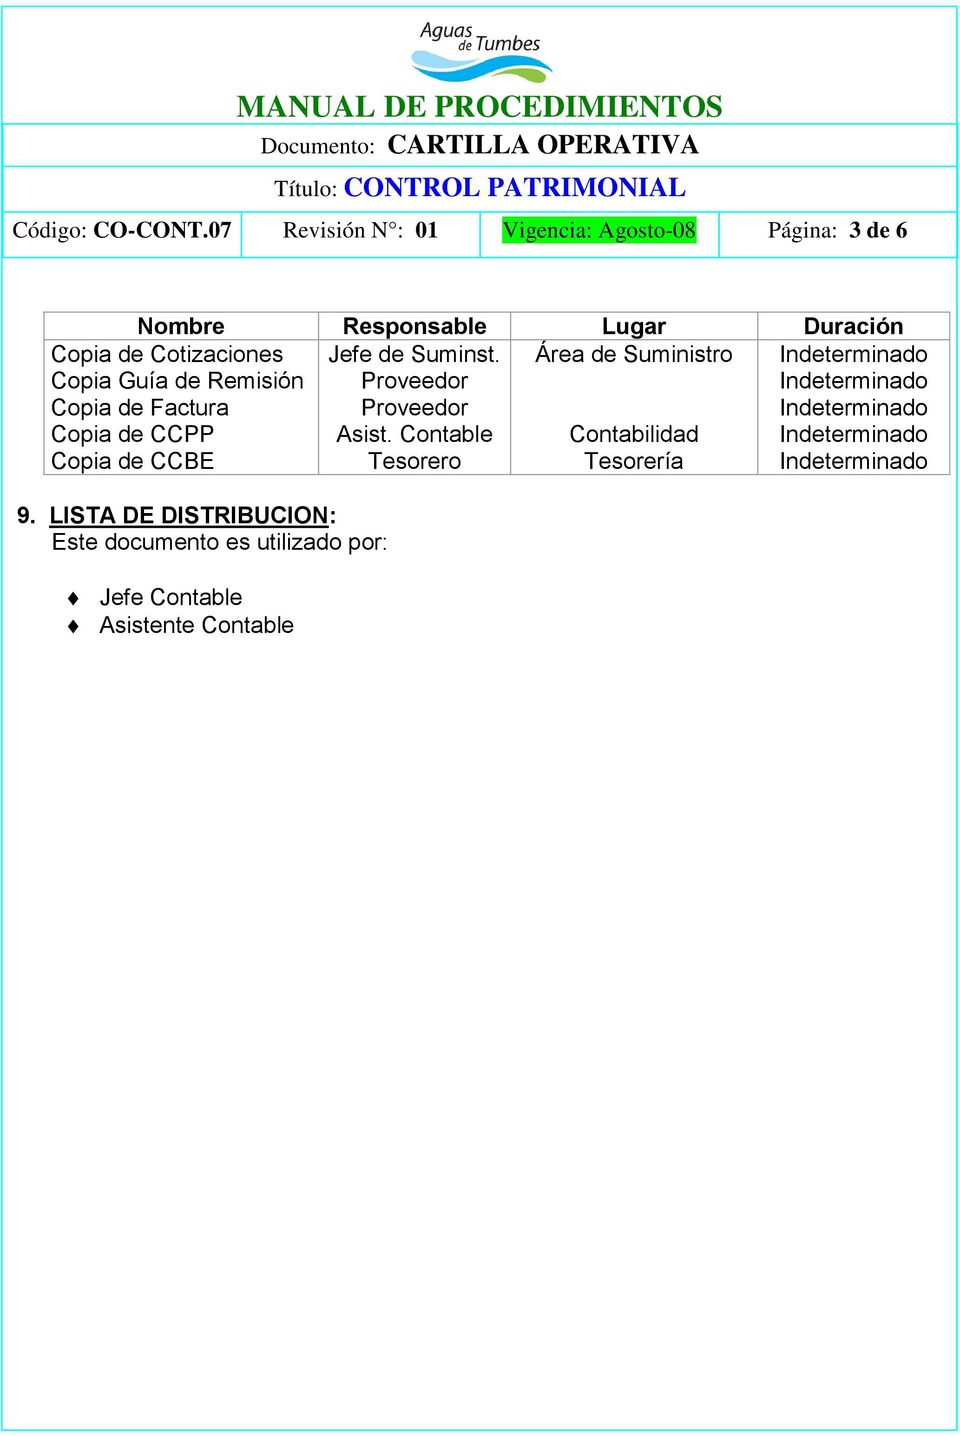 Cotizaciones Copia Guía de Remisión Copia de Factura Copia de CCPP Copia de CCBE Jefe de Suminst.